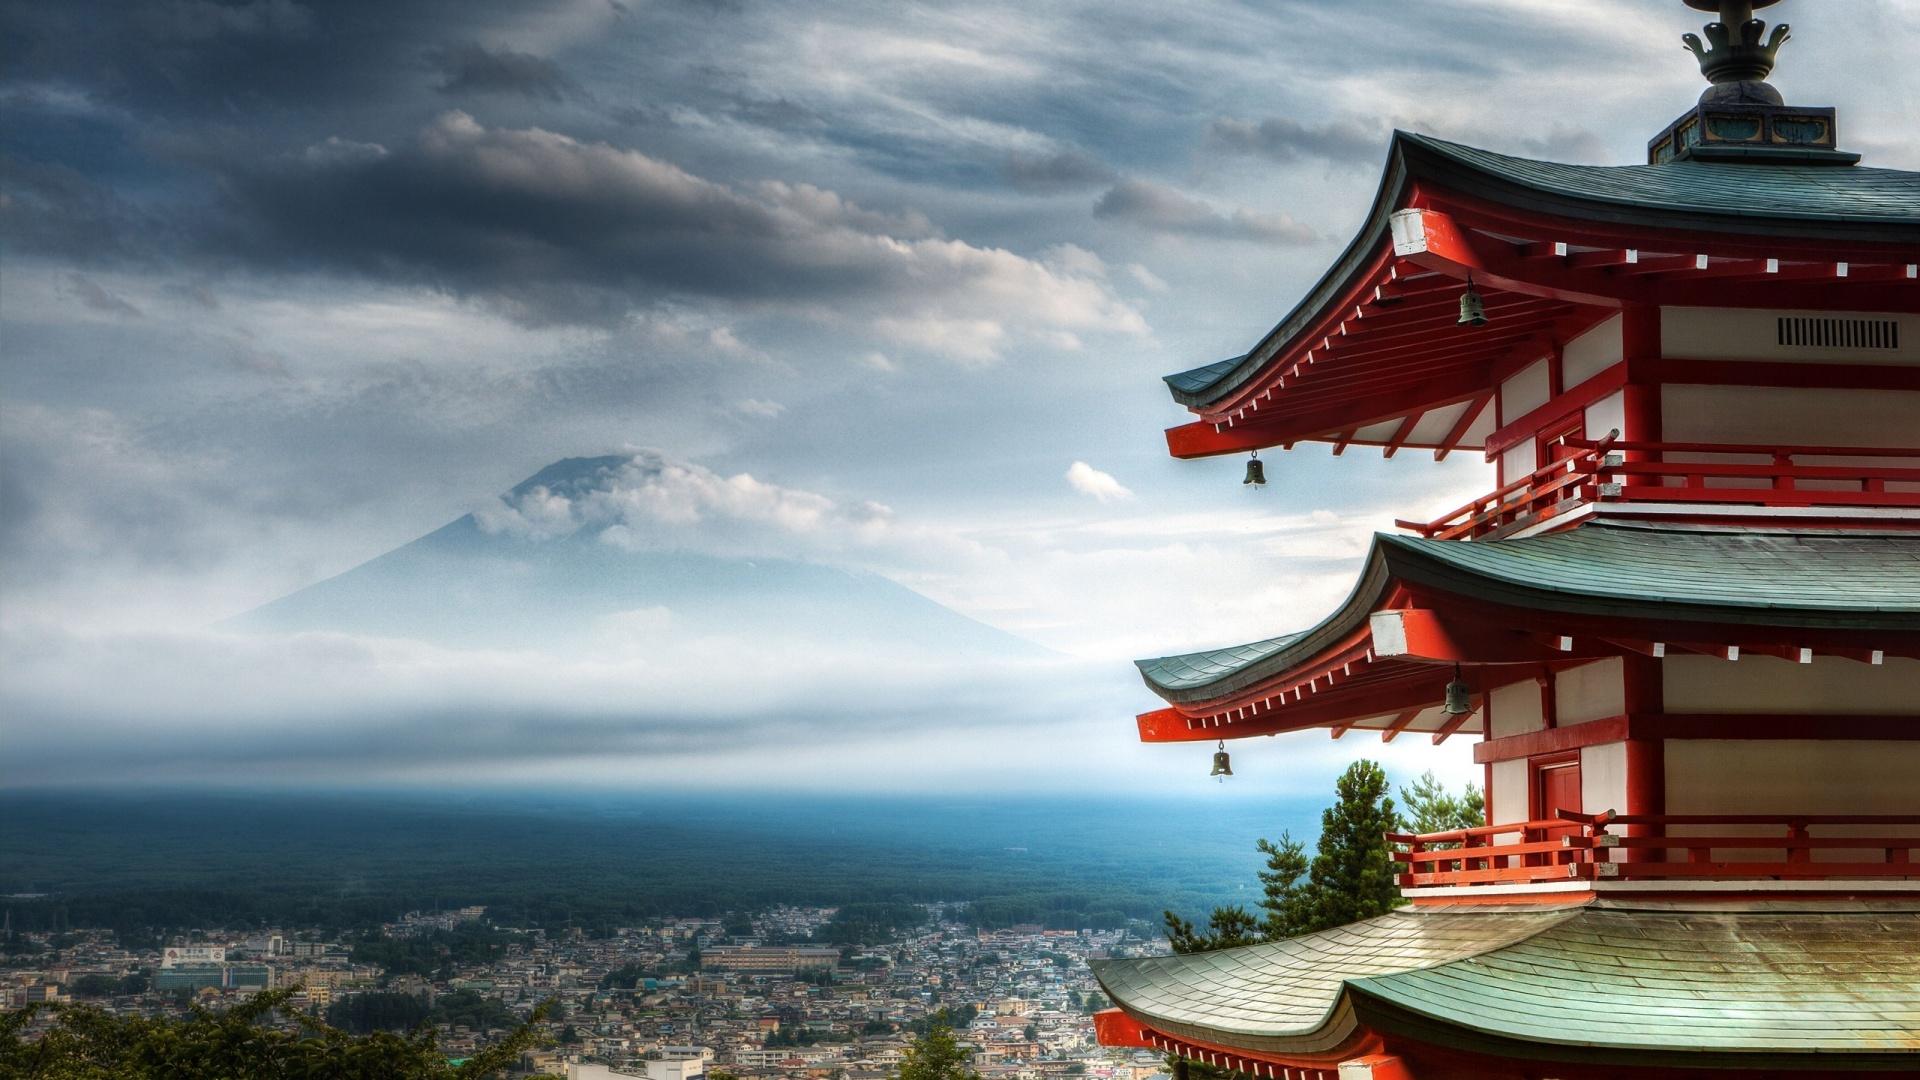 HD Mount Fuji Japan Wallpaper